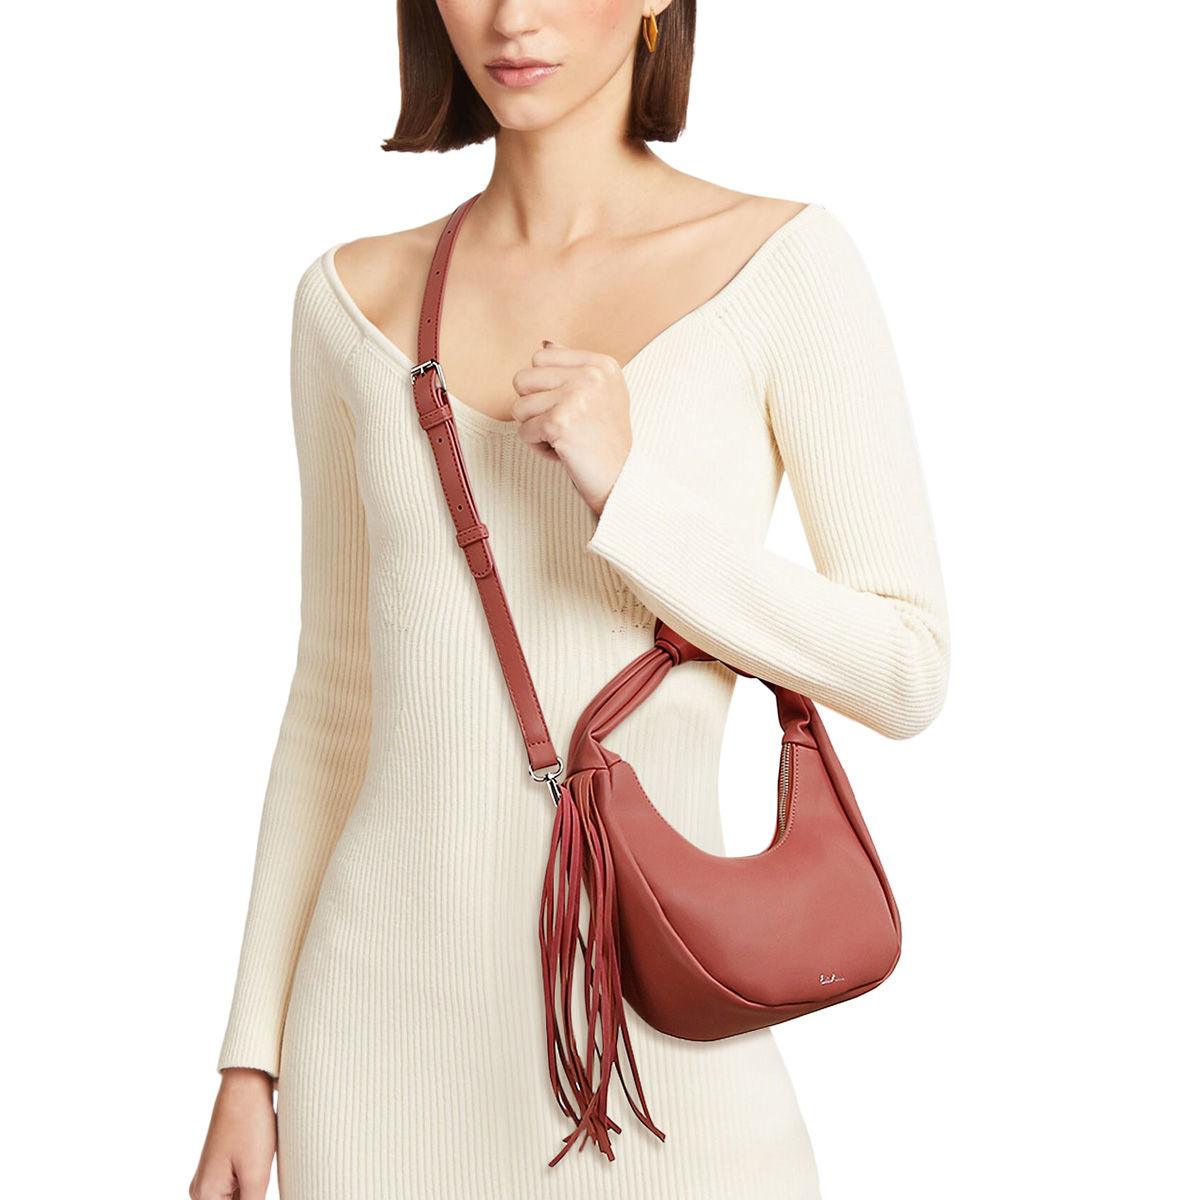 Get Noticed with a Stylish Pink Fringe Shoulder Bag for Women